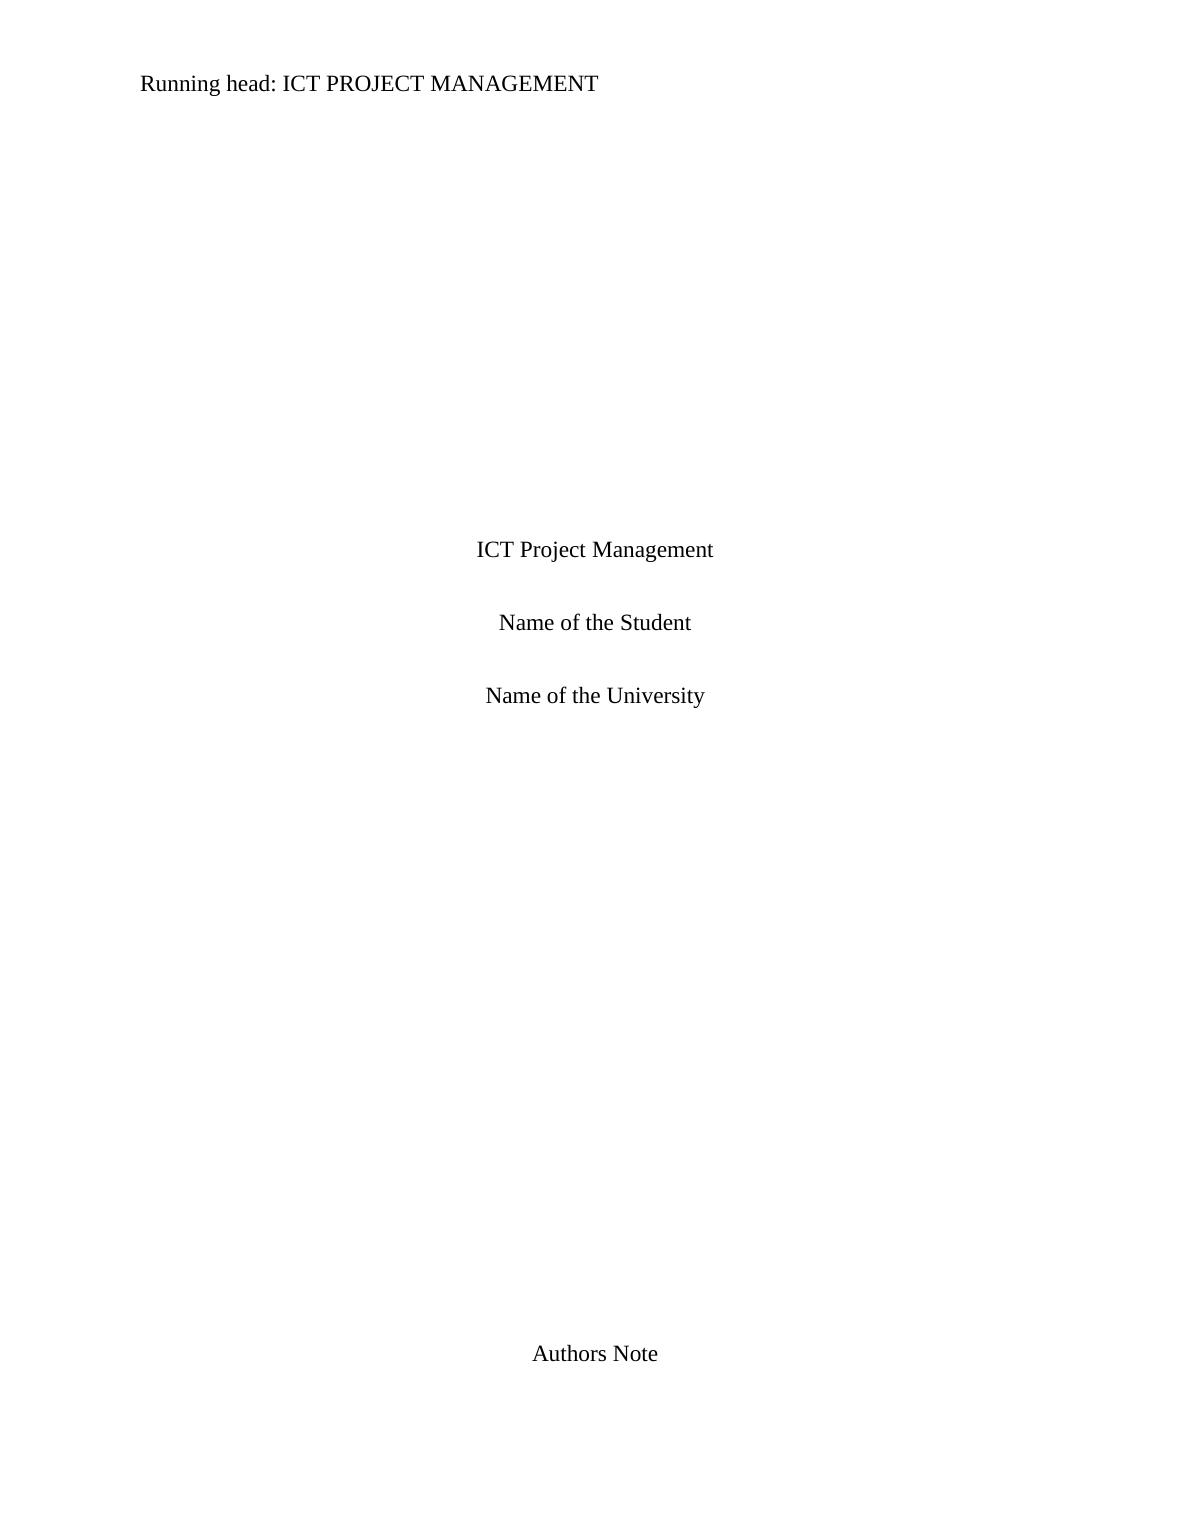 ICT Project Management - Doc_1